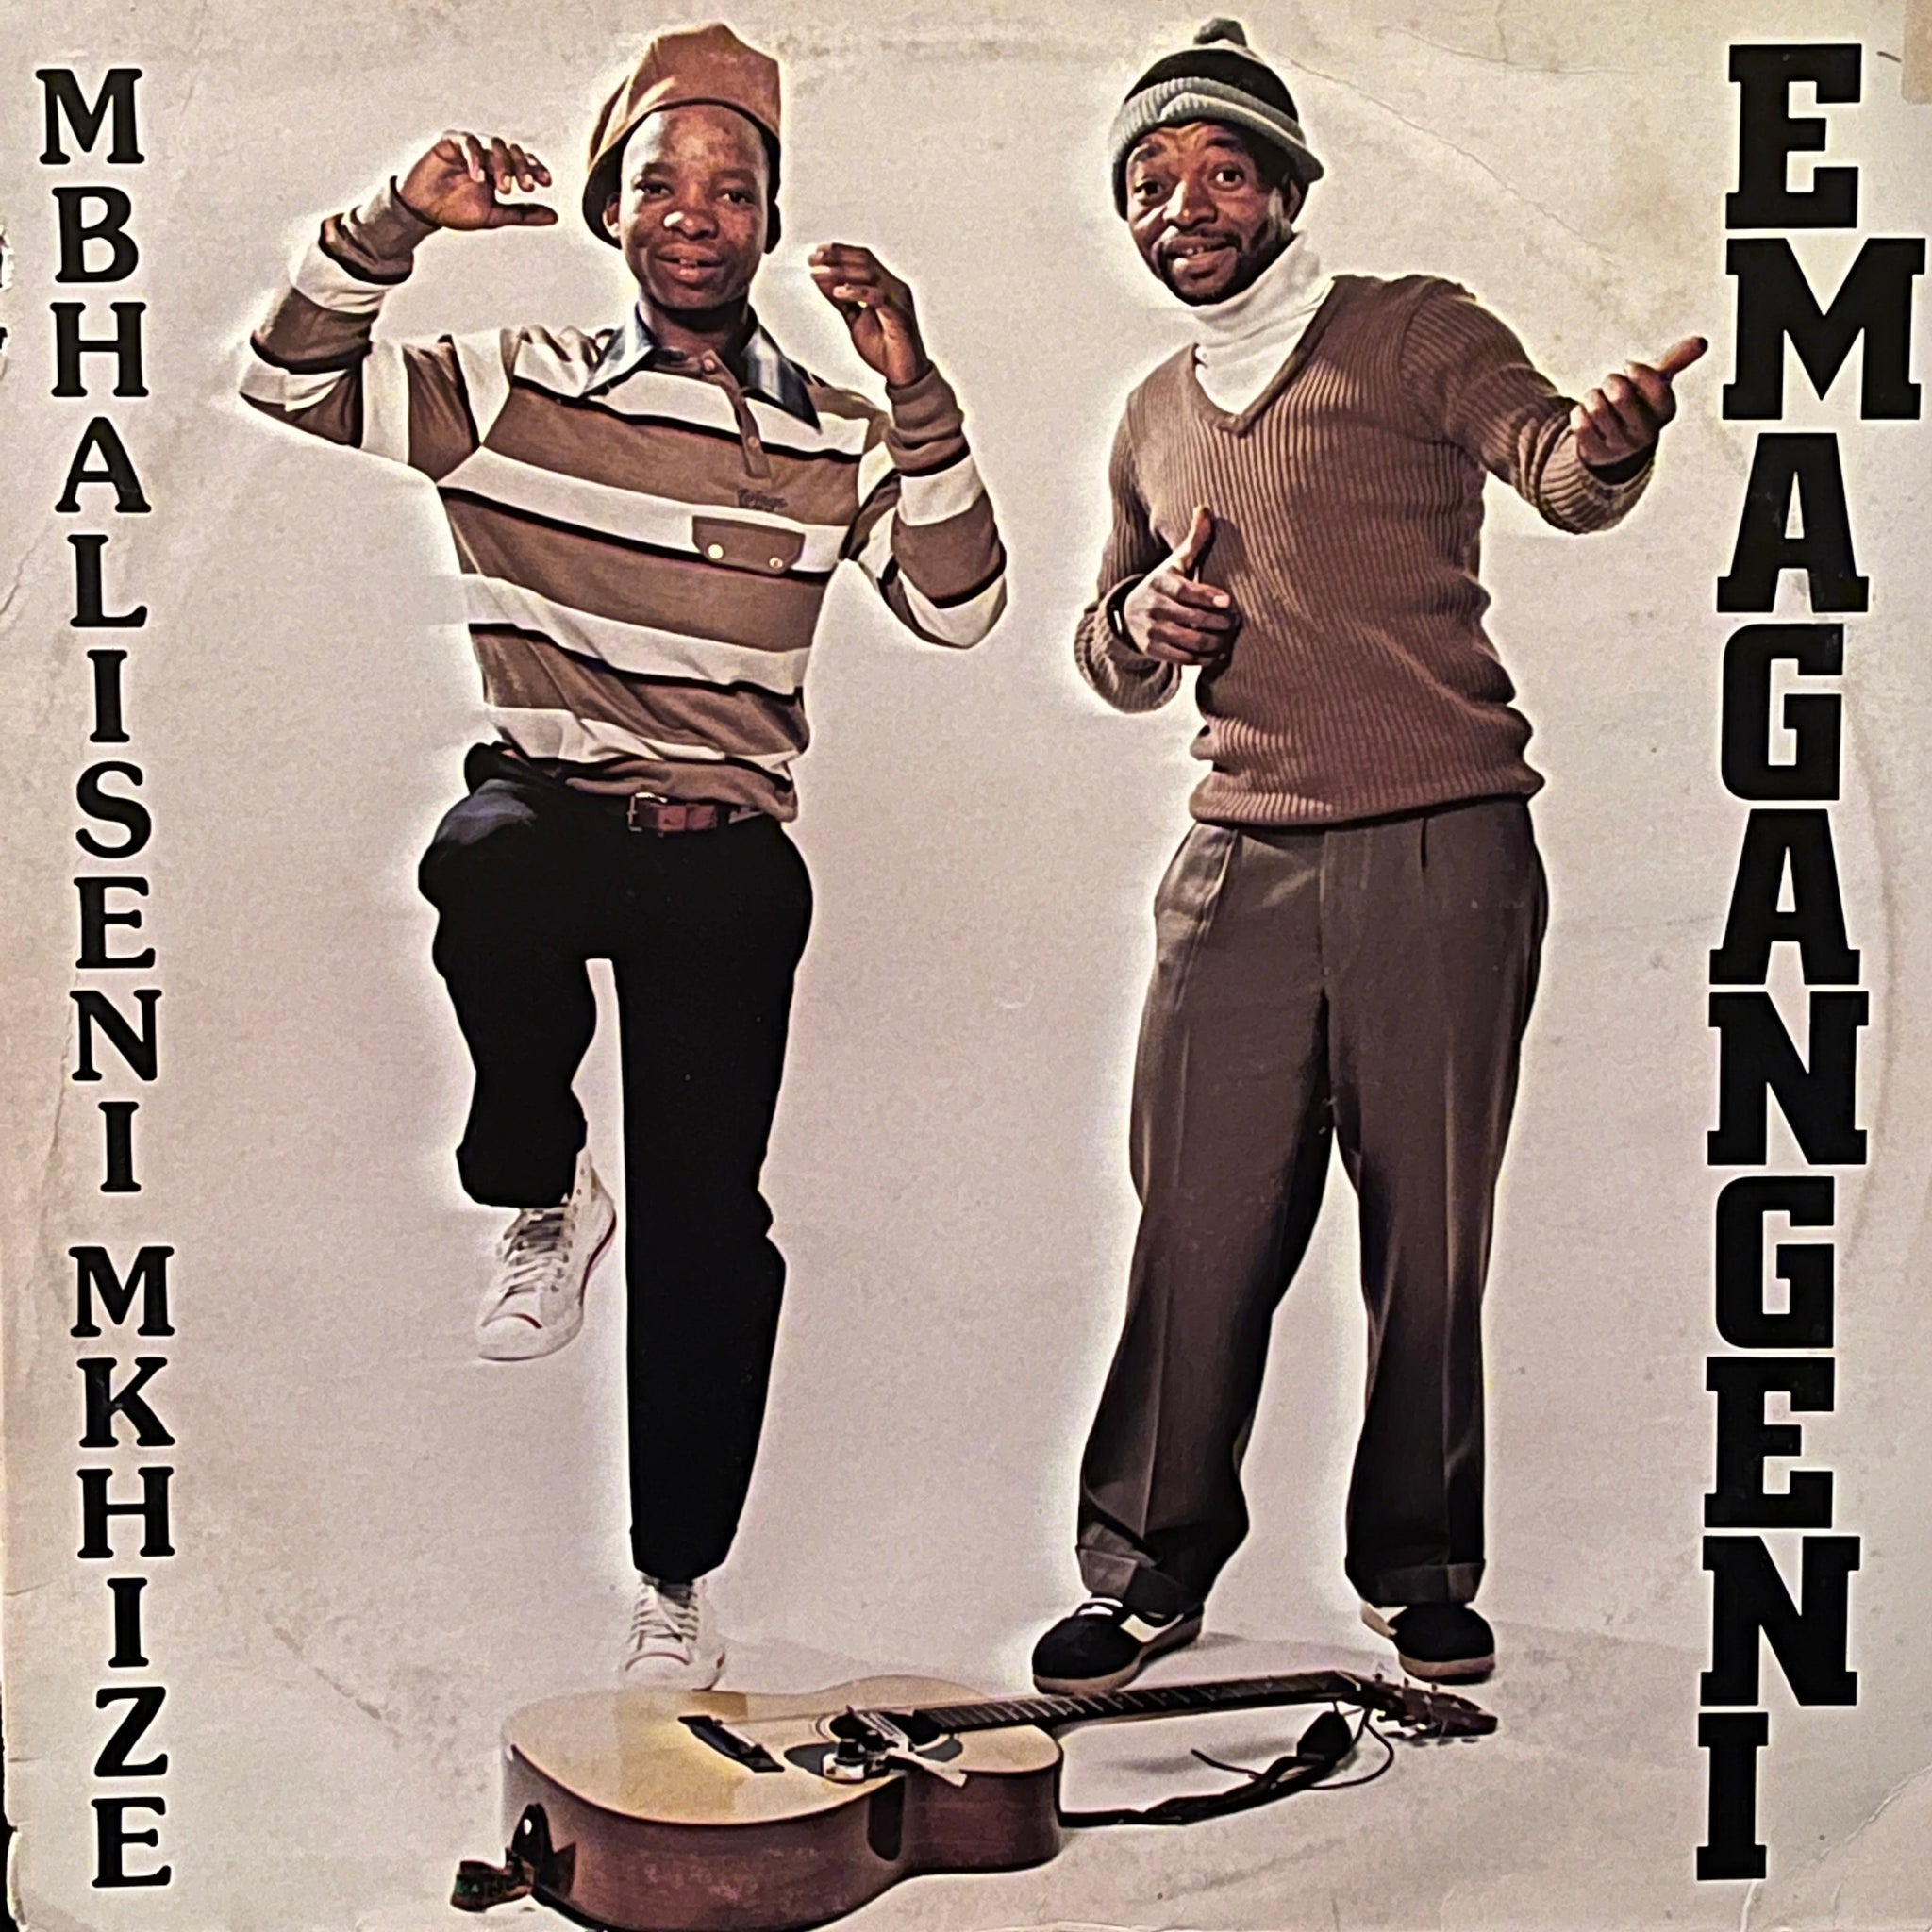 Mbhaliseni Mkhize - Emangeni